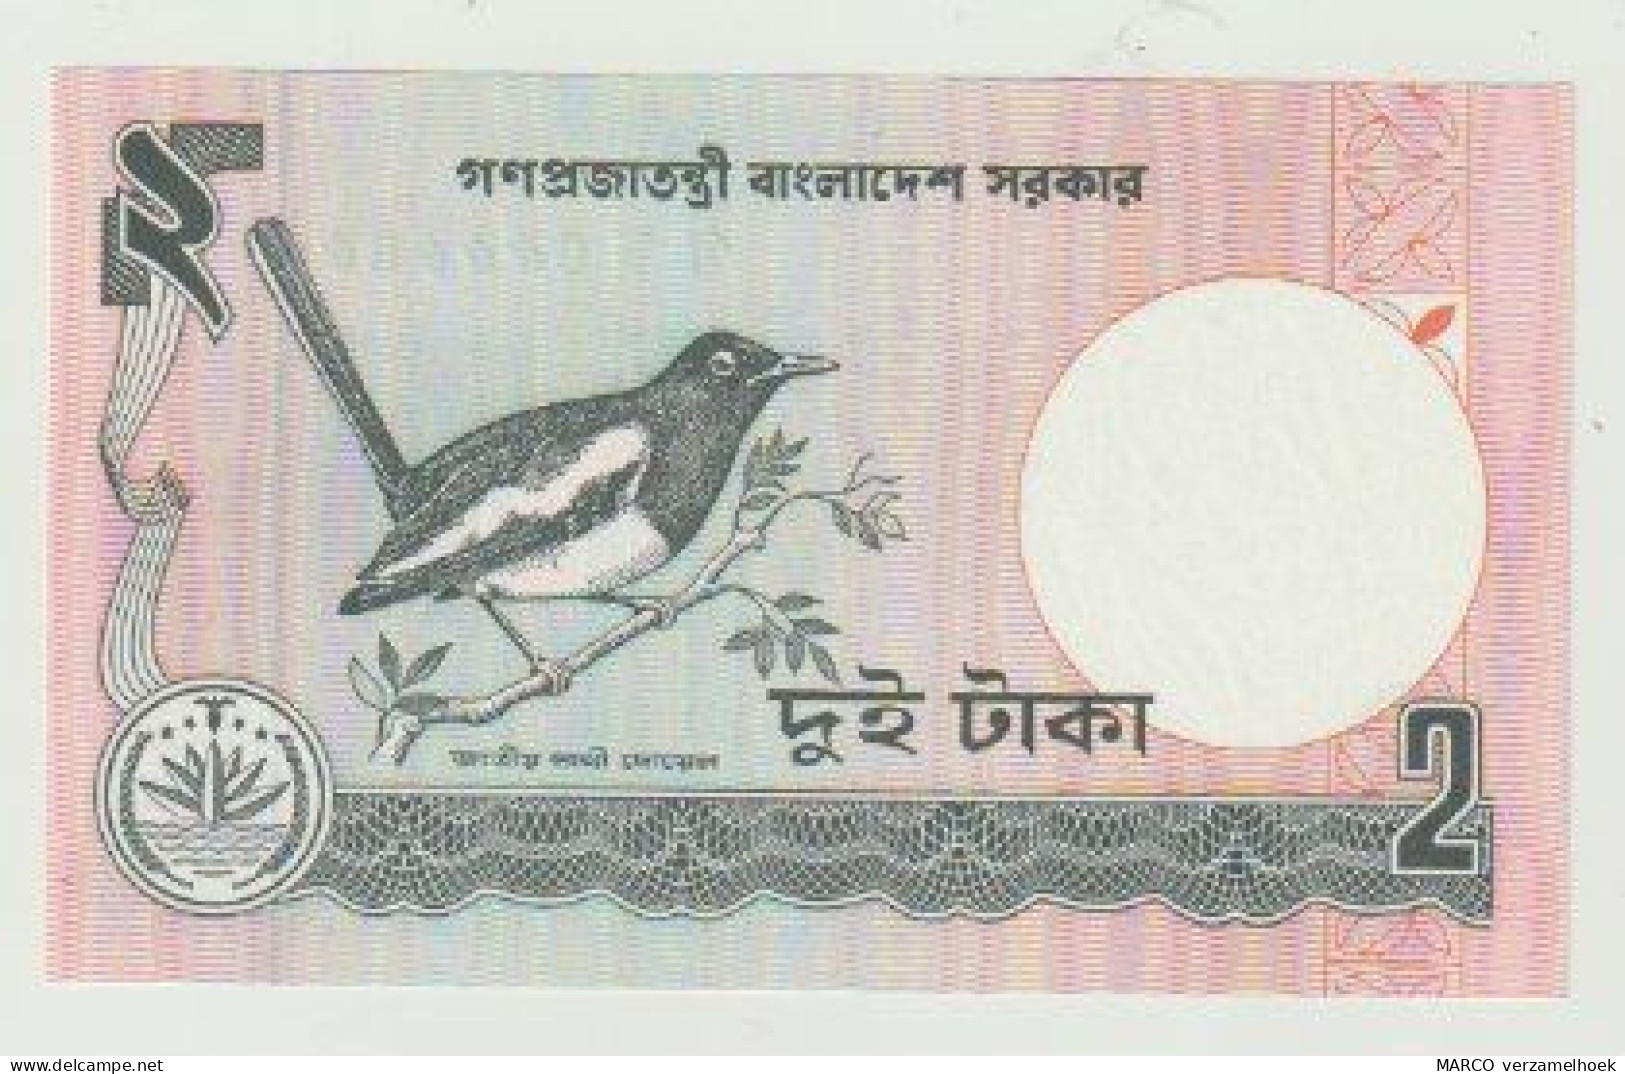 Banknote Bangladesh 2 Taka 1989 UNC - Bangladesh